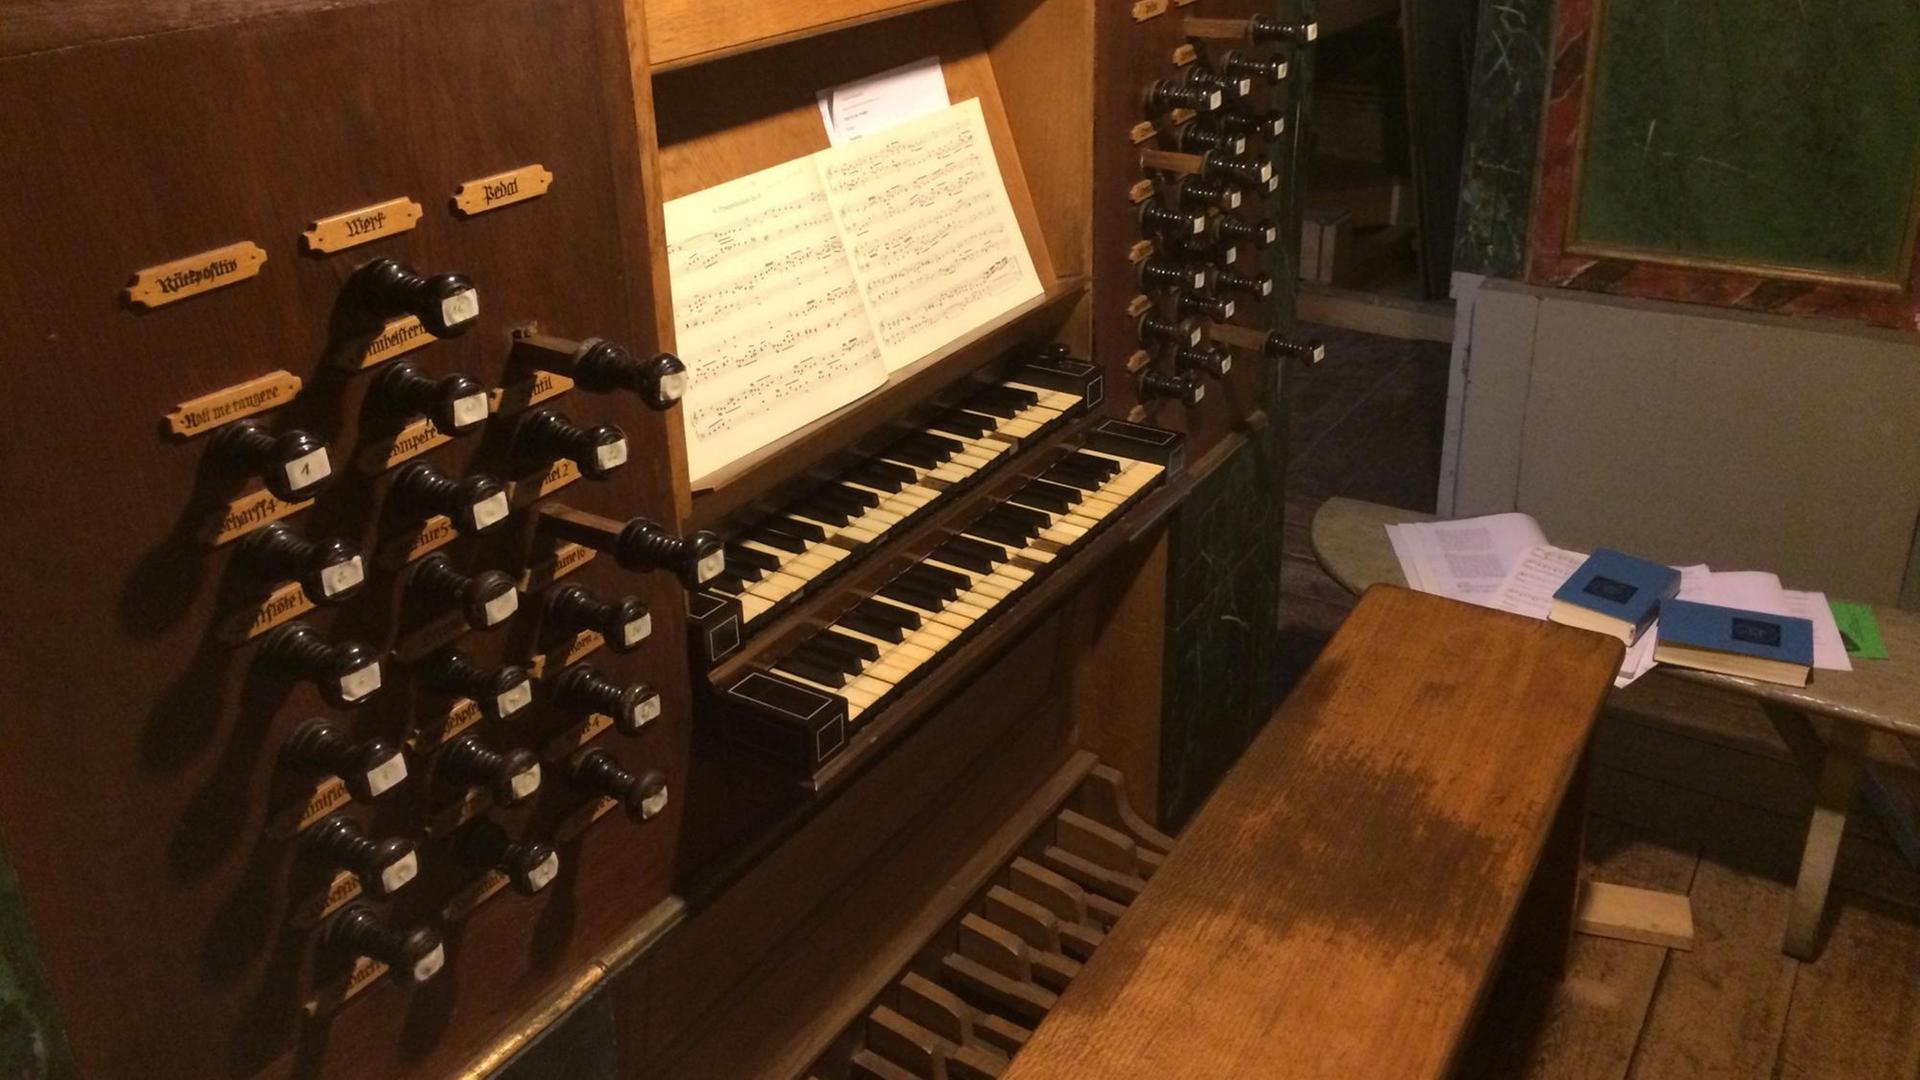 April 2015: Noch ist der Spieltisch der Schnitger-Orgel in Neuenfelde am Stadtrand von Hamburg nicht restauriert